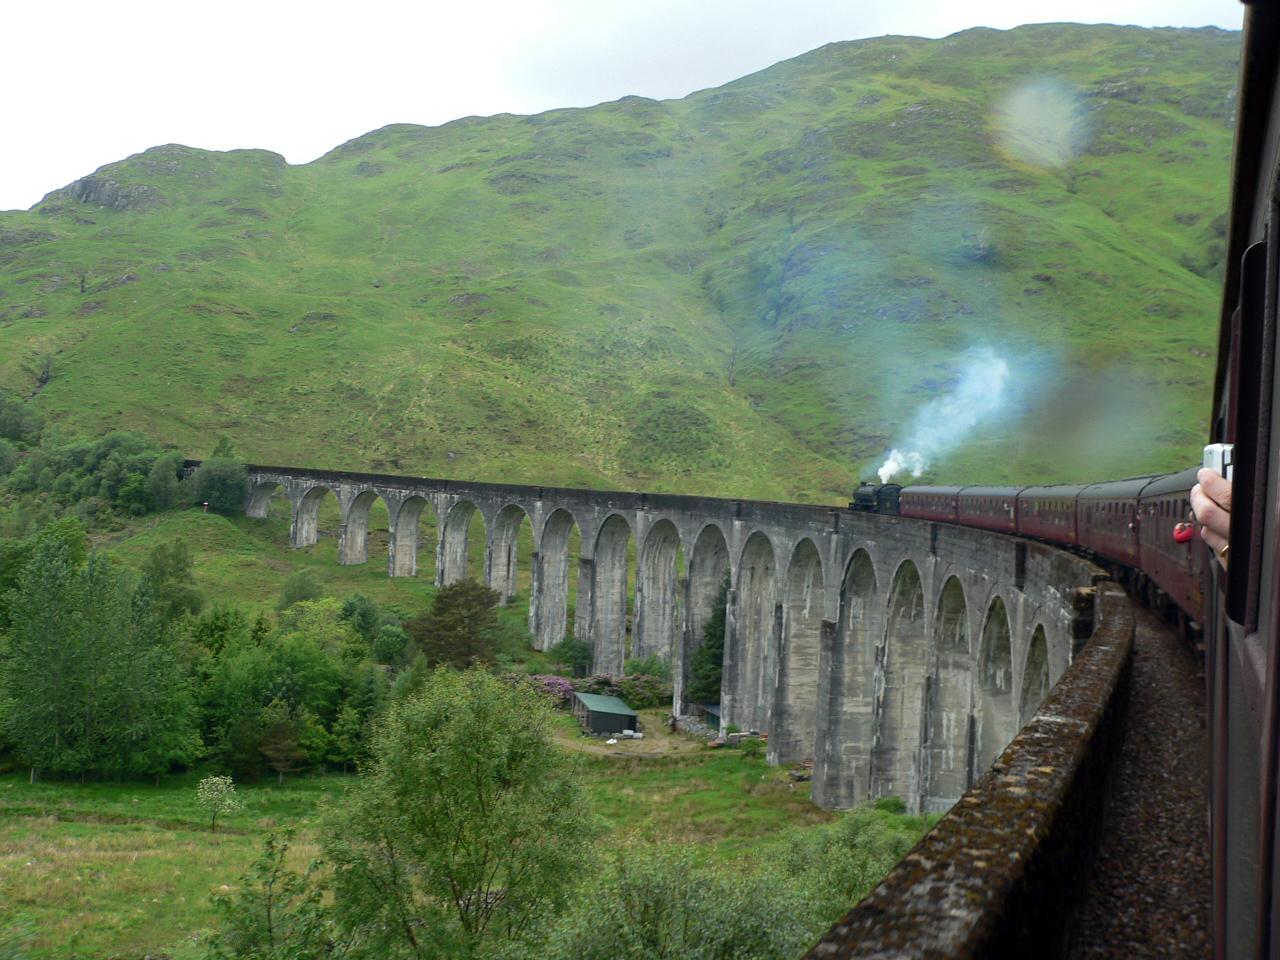 West Highland Line, Skottland Har röstats fram som världens vackraste järnväg av magasinet Wanderlusts läsare. Förbinder hamnstäderna Mallaig och Oban. Den 30 meter höga Glenfinnan Viaduct finns för övrigt med i en av Harry Potter-filmerna.
 Kolla in billigaste flygen till Storbritannien här.